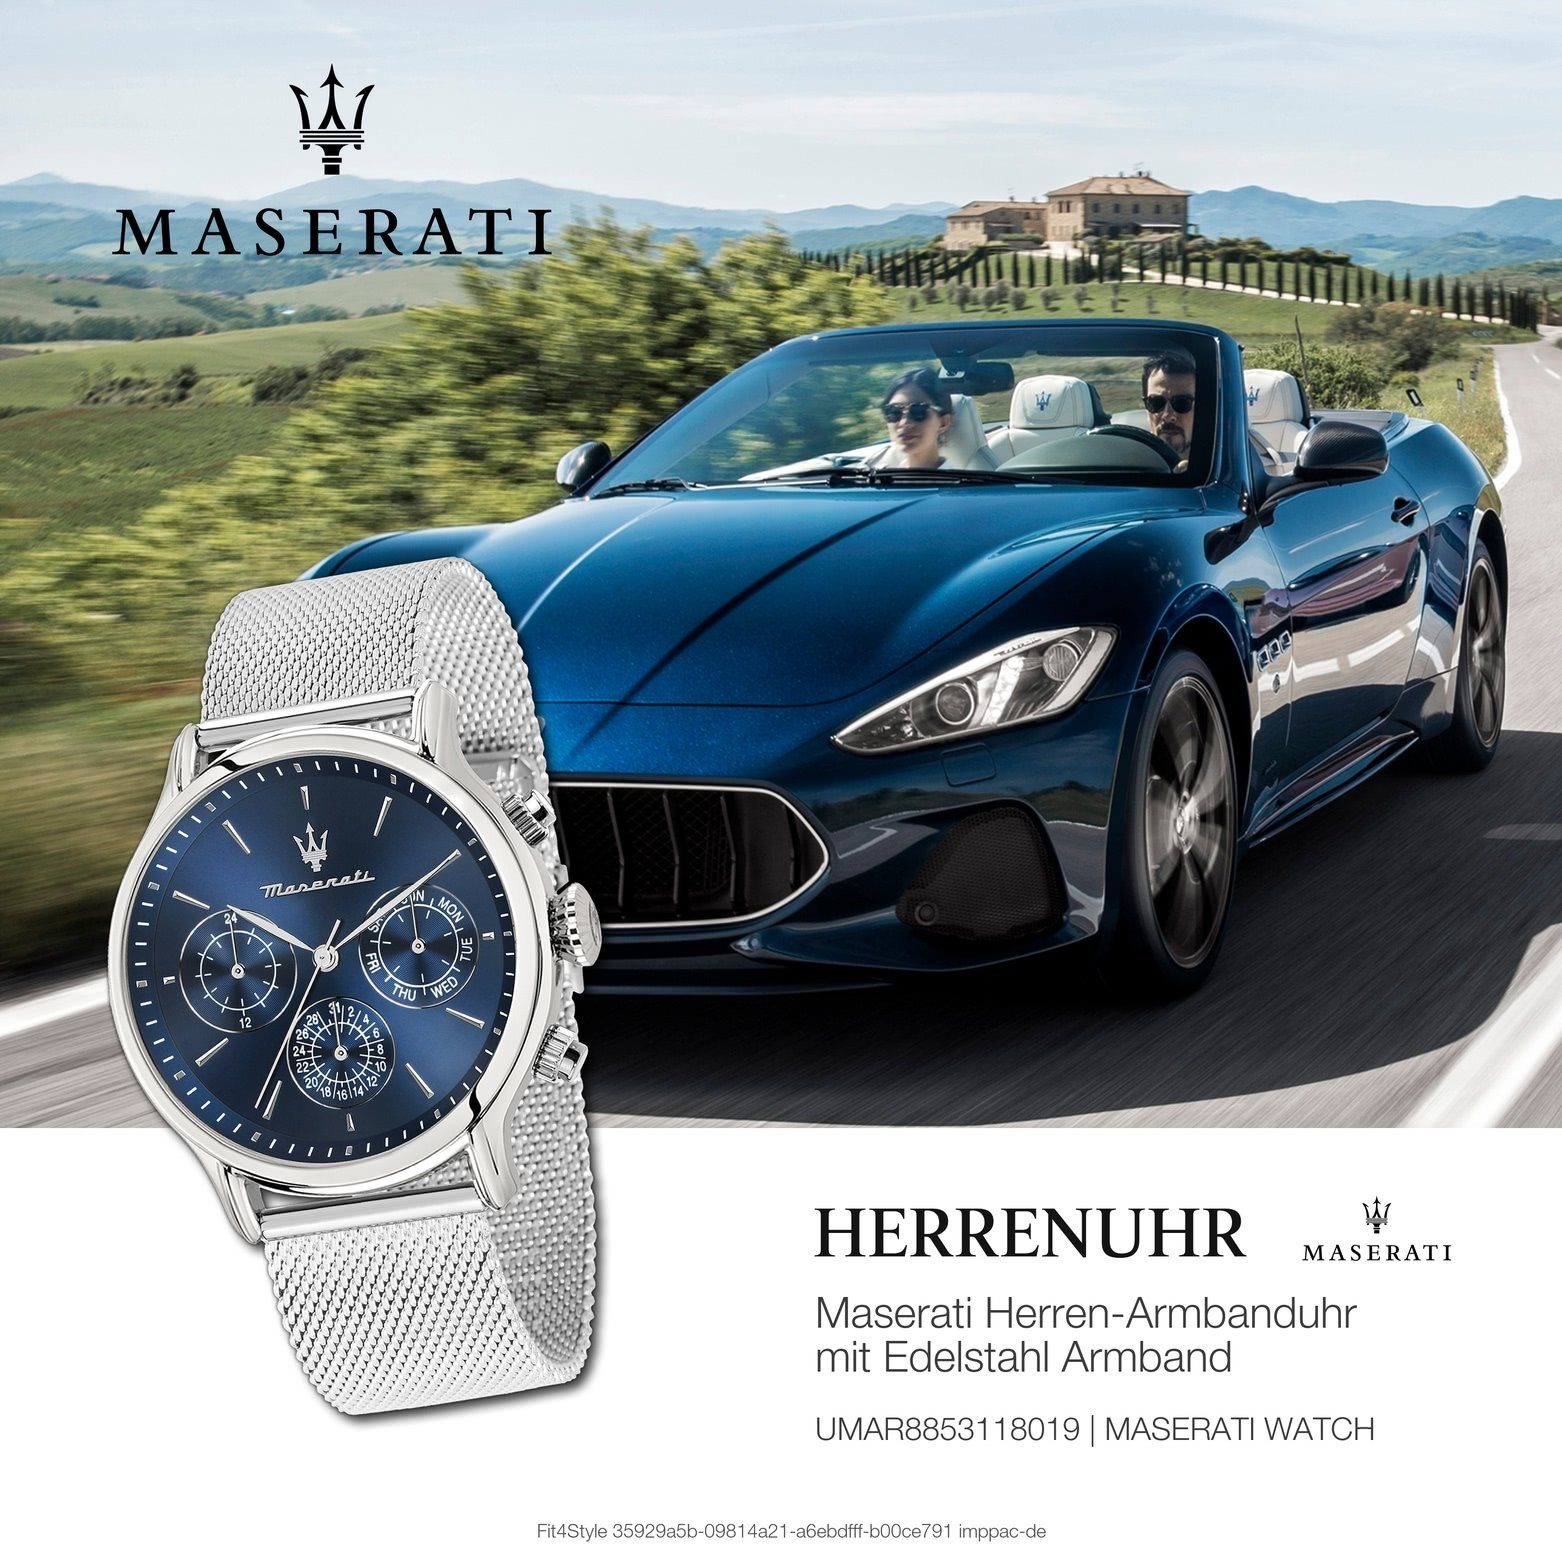 MASERATI Multifunktionsuhr Herrenuhr Made-In Italy Maserati Edelstahlarmband, Multifunktion, Herrenuhr rund, groß 48,8x42mm) (ca